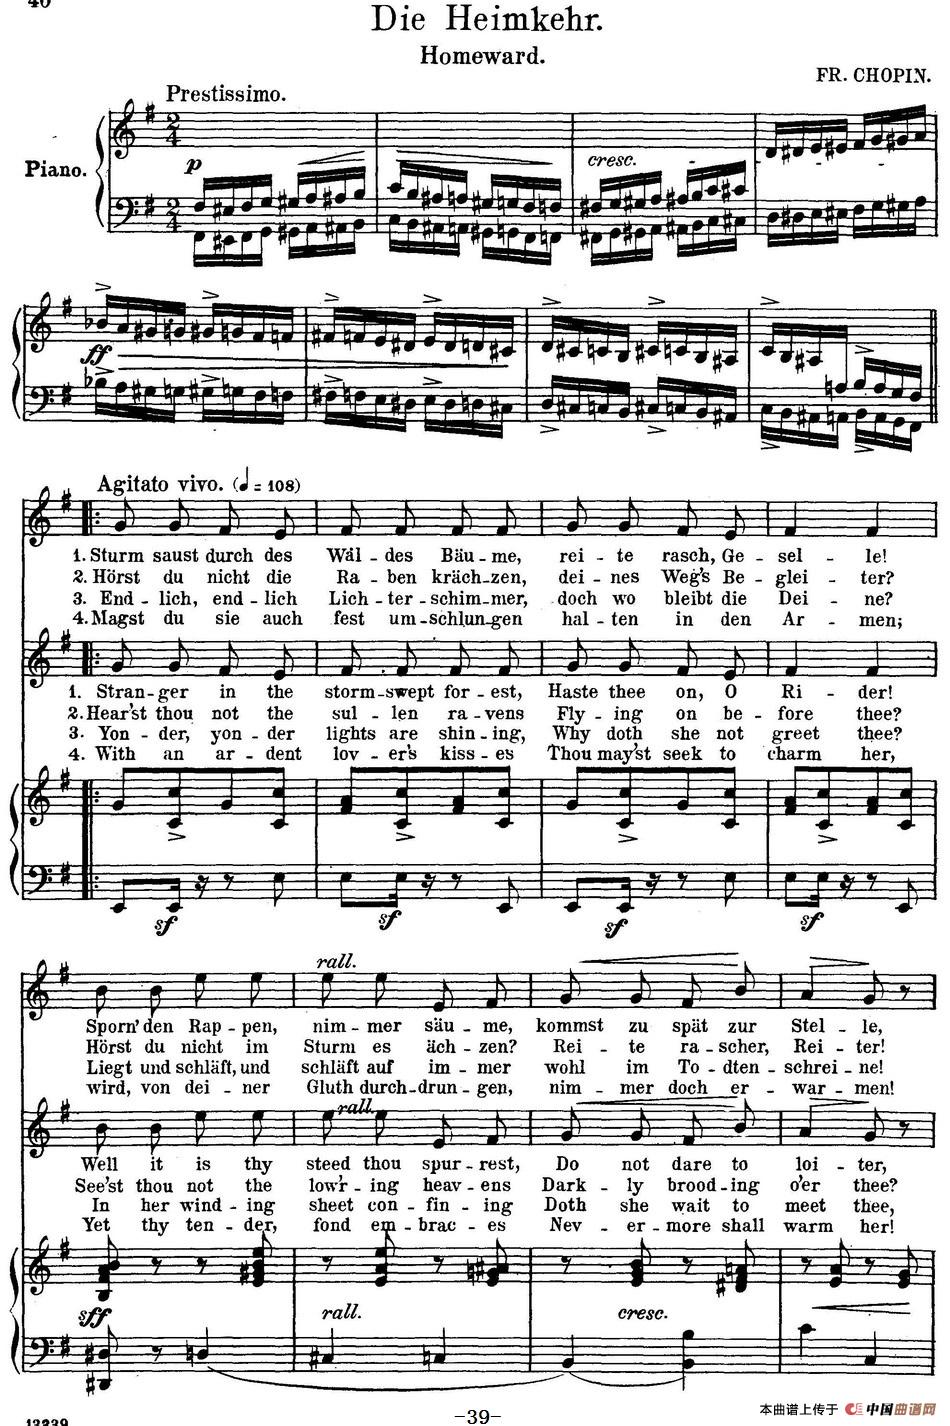 Chopin-17 Polish Songs Op.74，No.15（Die Heinmkehr. Homewar